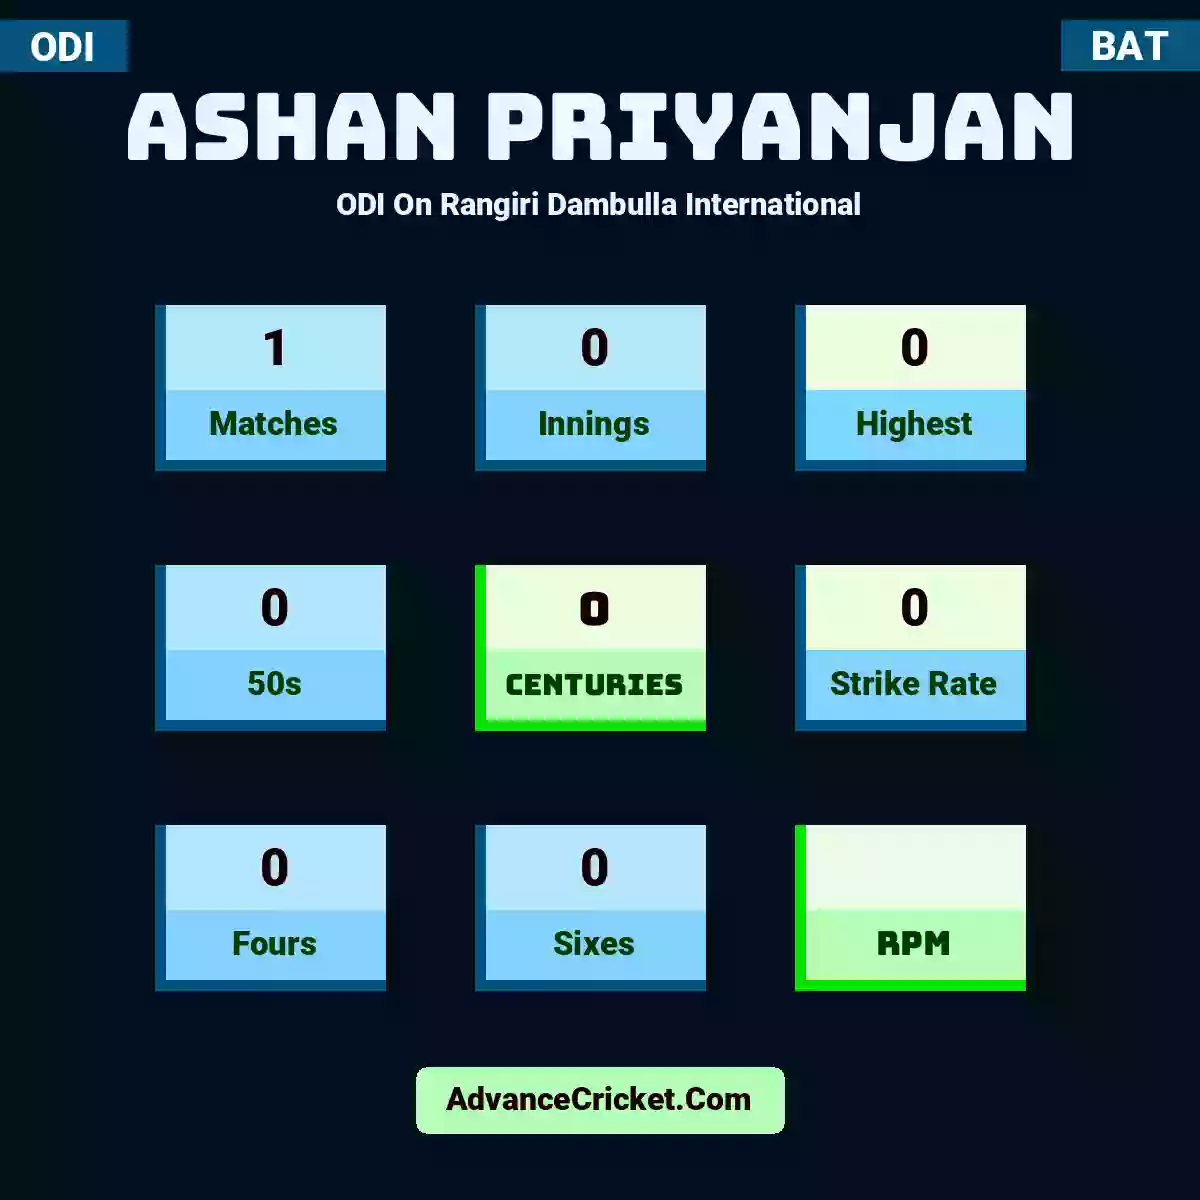 Ashan Priyanjan ODI  On Rangiri Dambulla International, Ashan Priyanjan played 1 matches, scored 0 runs as highest, 0 half-centuries, and 0 centuries, with a strike rate of 0. A.Priyanjan hit 0 fours and 0 sixes.